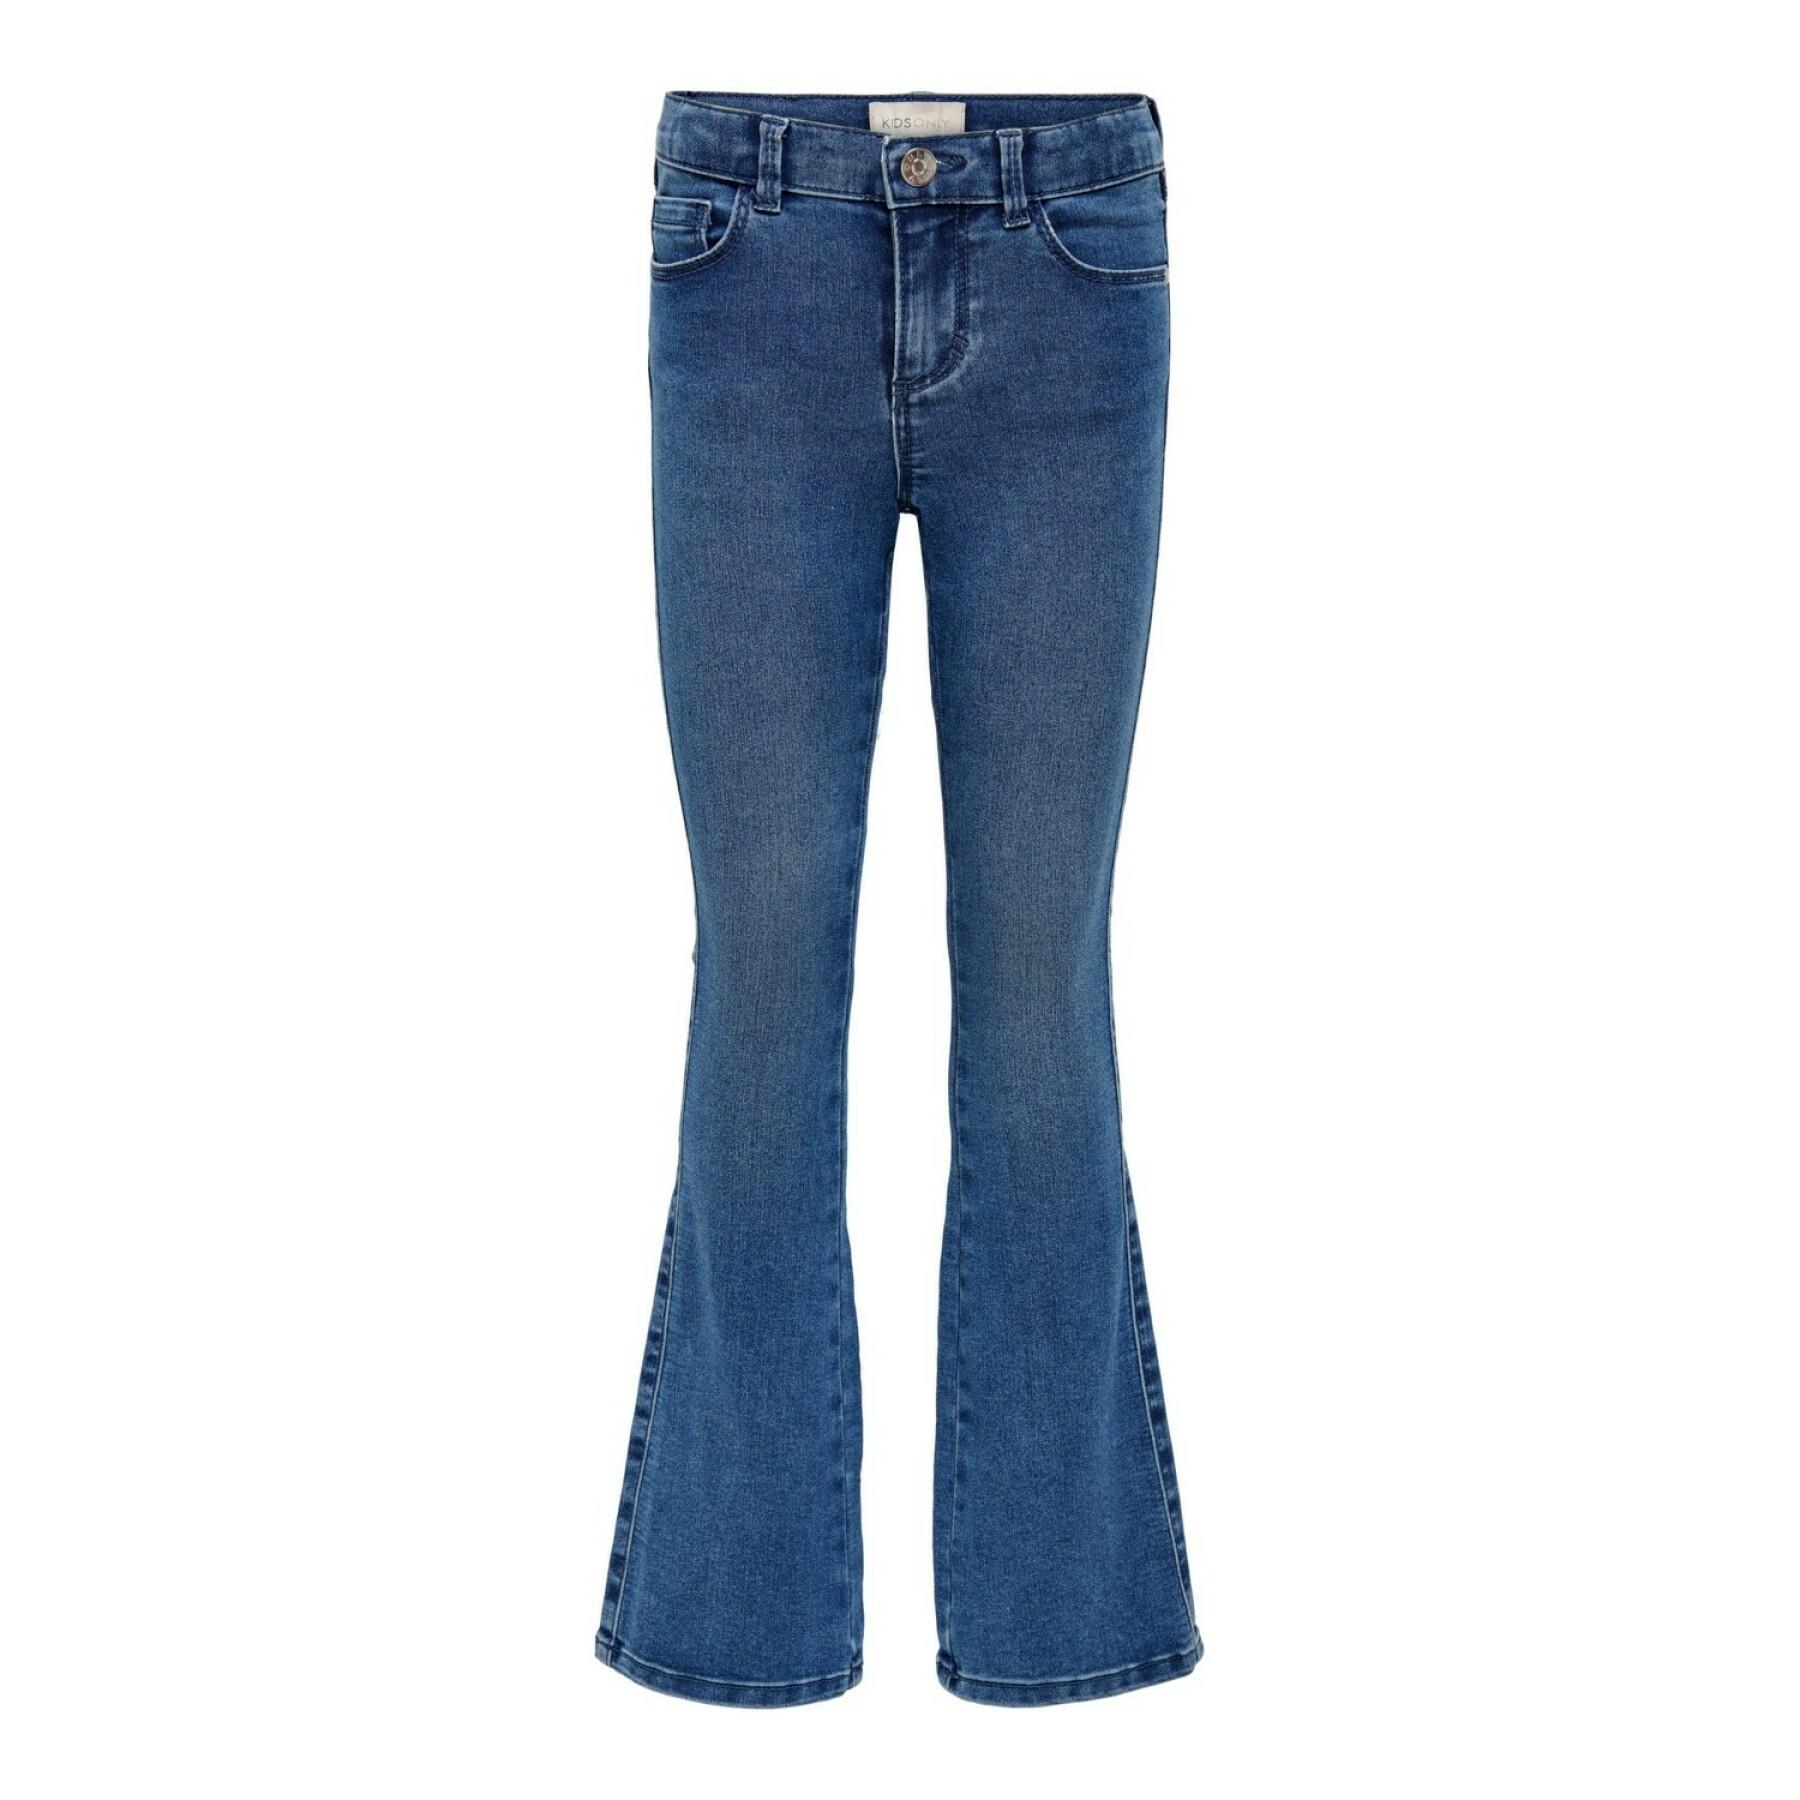 Girl's jeans Only konroyal life